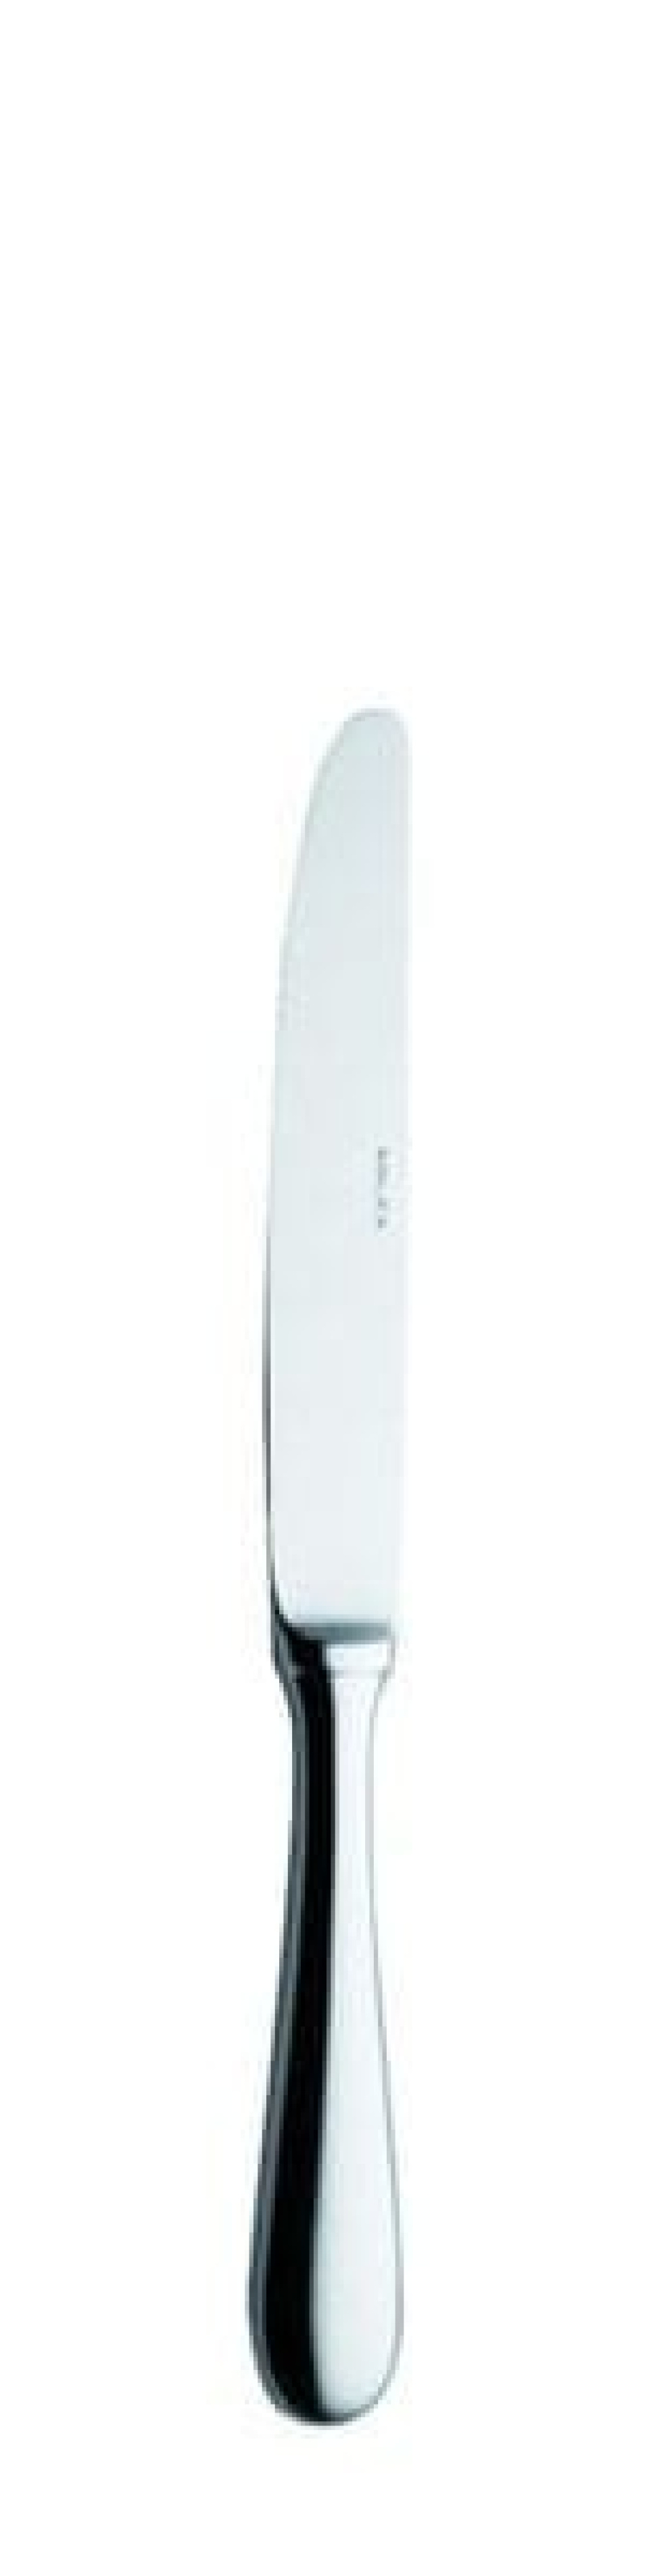 Nóż deserowy Baguette z pustą rękojeścią, 215 mm w grupie Nakrycie stołu / Sztućce / Noże w The Kitchen Lab (1284-14161)